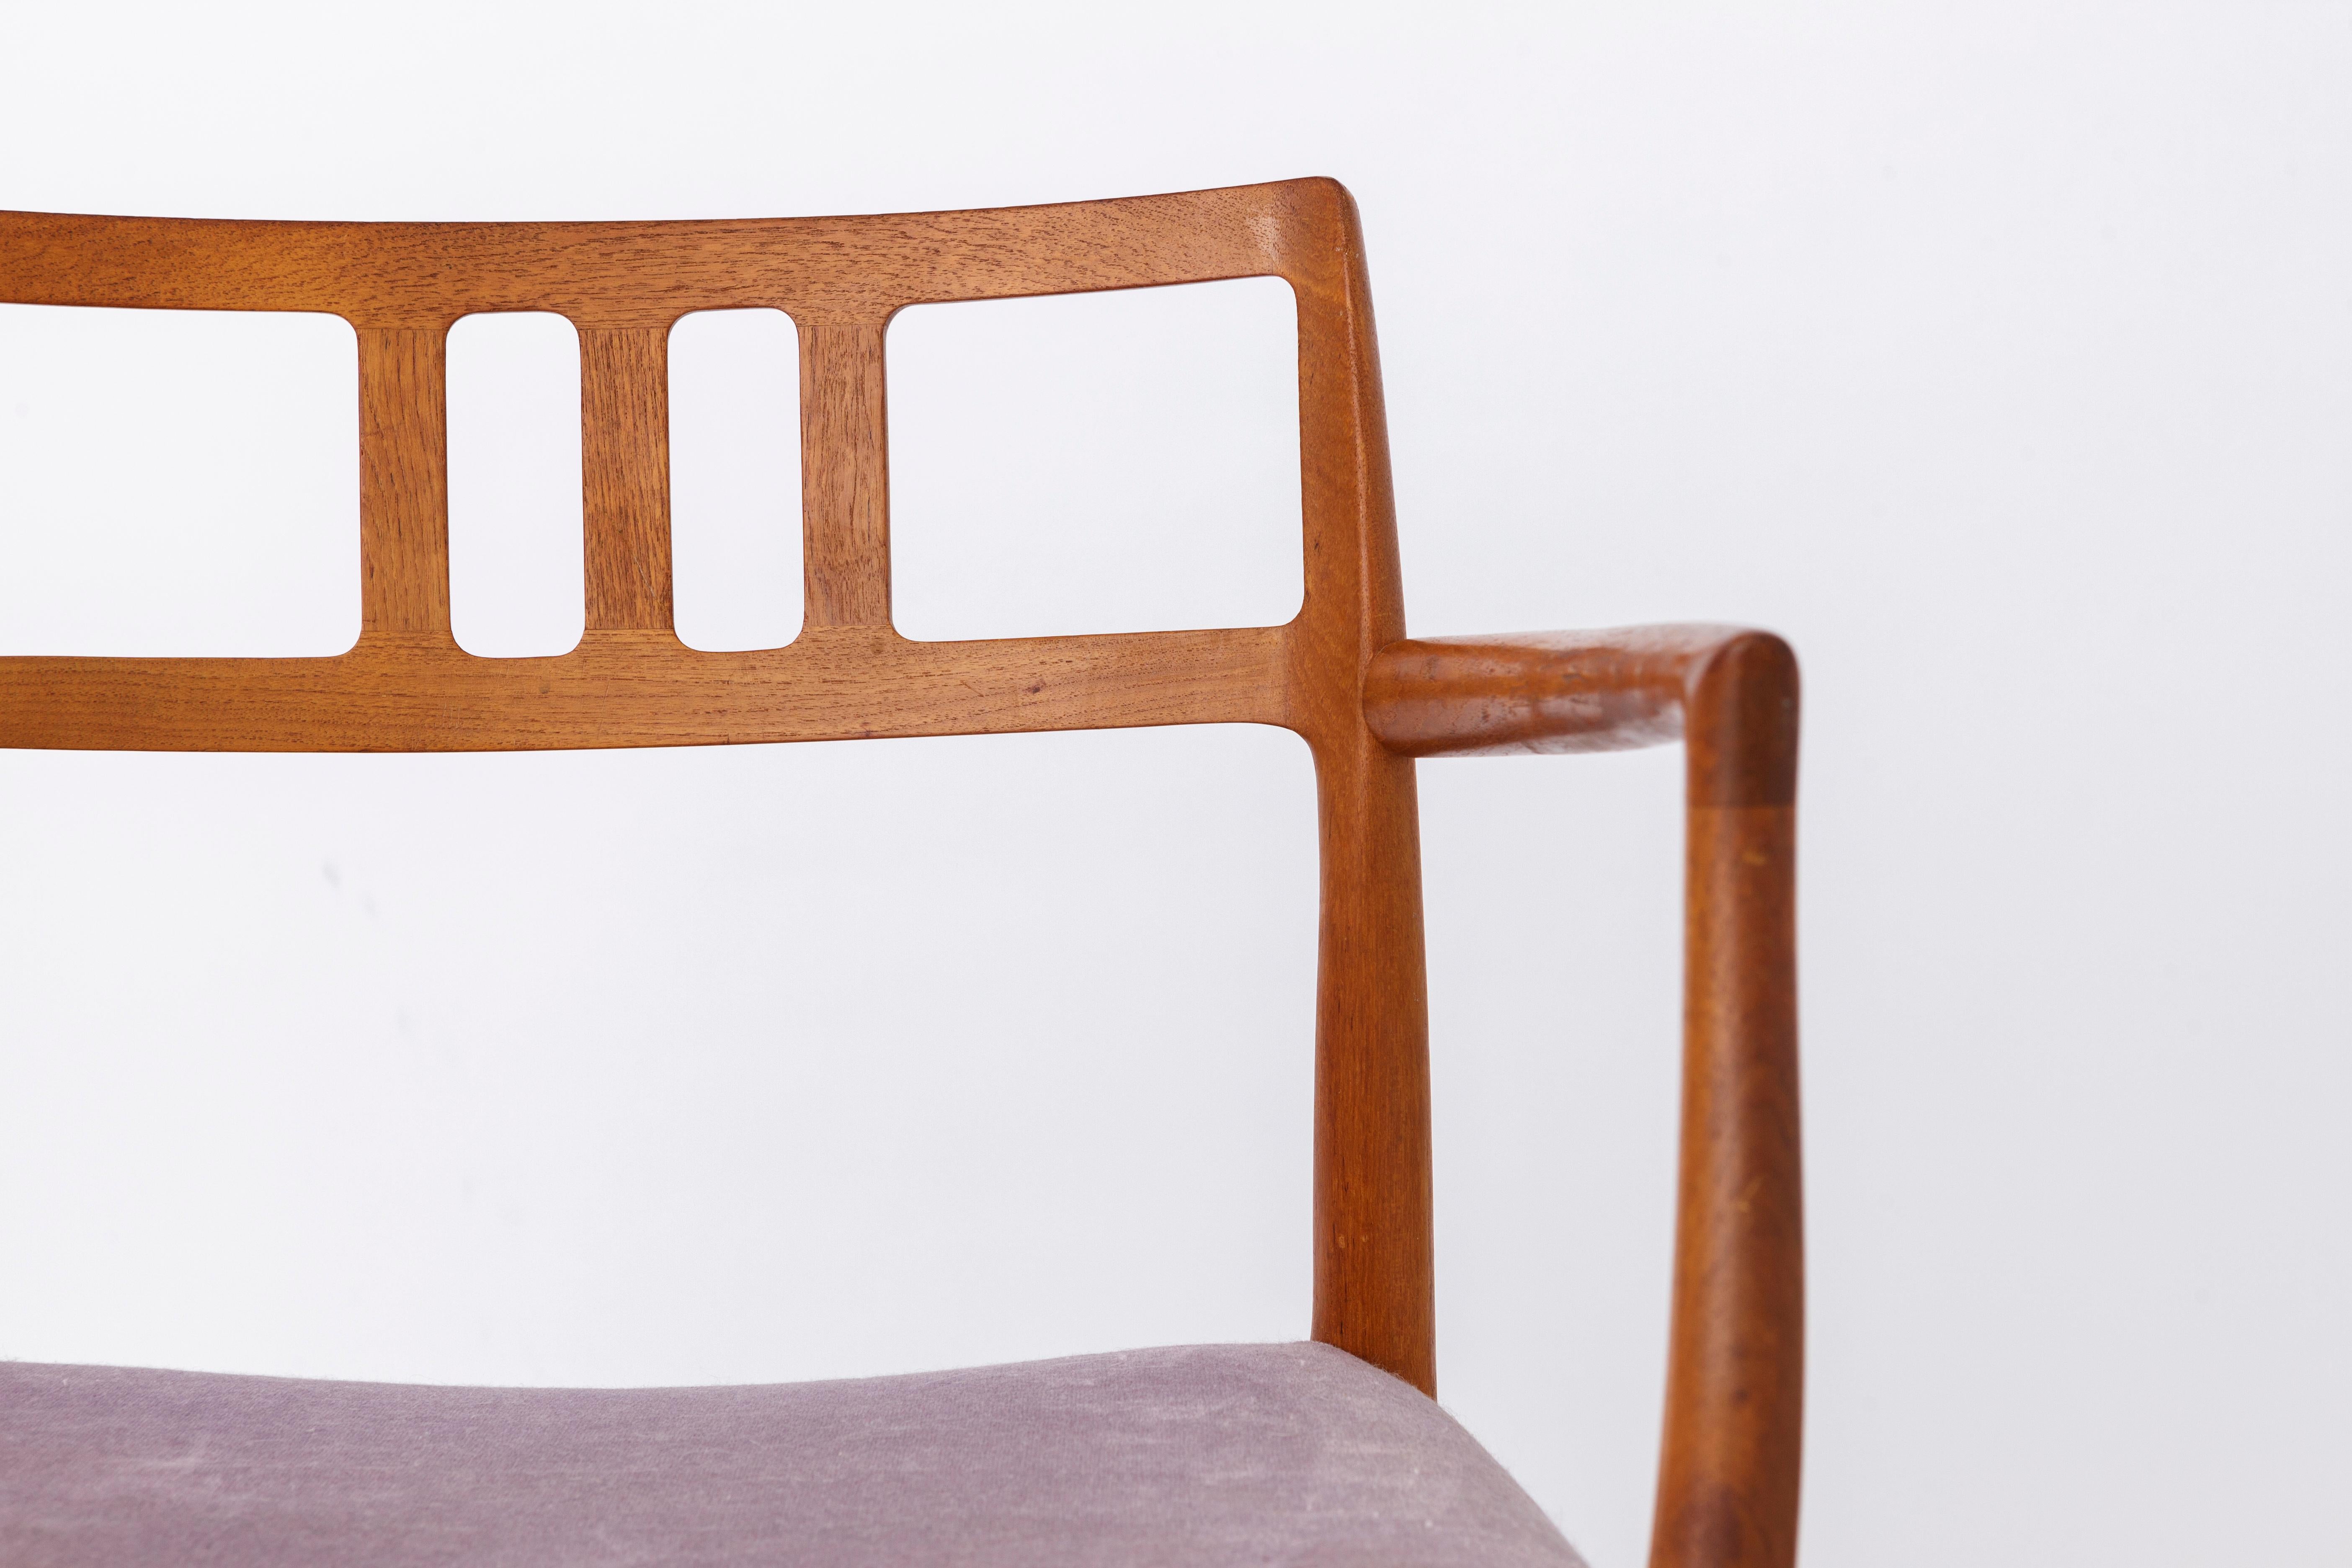 Je travaille actuellement sur ce fauteuil : 
Très beau et très rare fauteuil de J.L.A. Mollers, modèle 64.
Design/One de 1966, de Niels Otto Moller. 
La chaise peut être achetée. L'expédition se fera dans un délai de 3 à 4 semaines. 
Des photos de